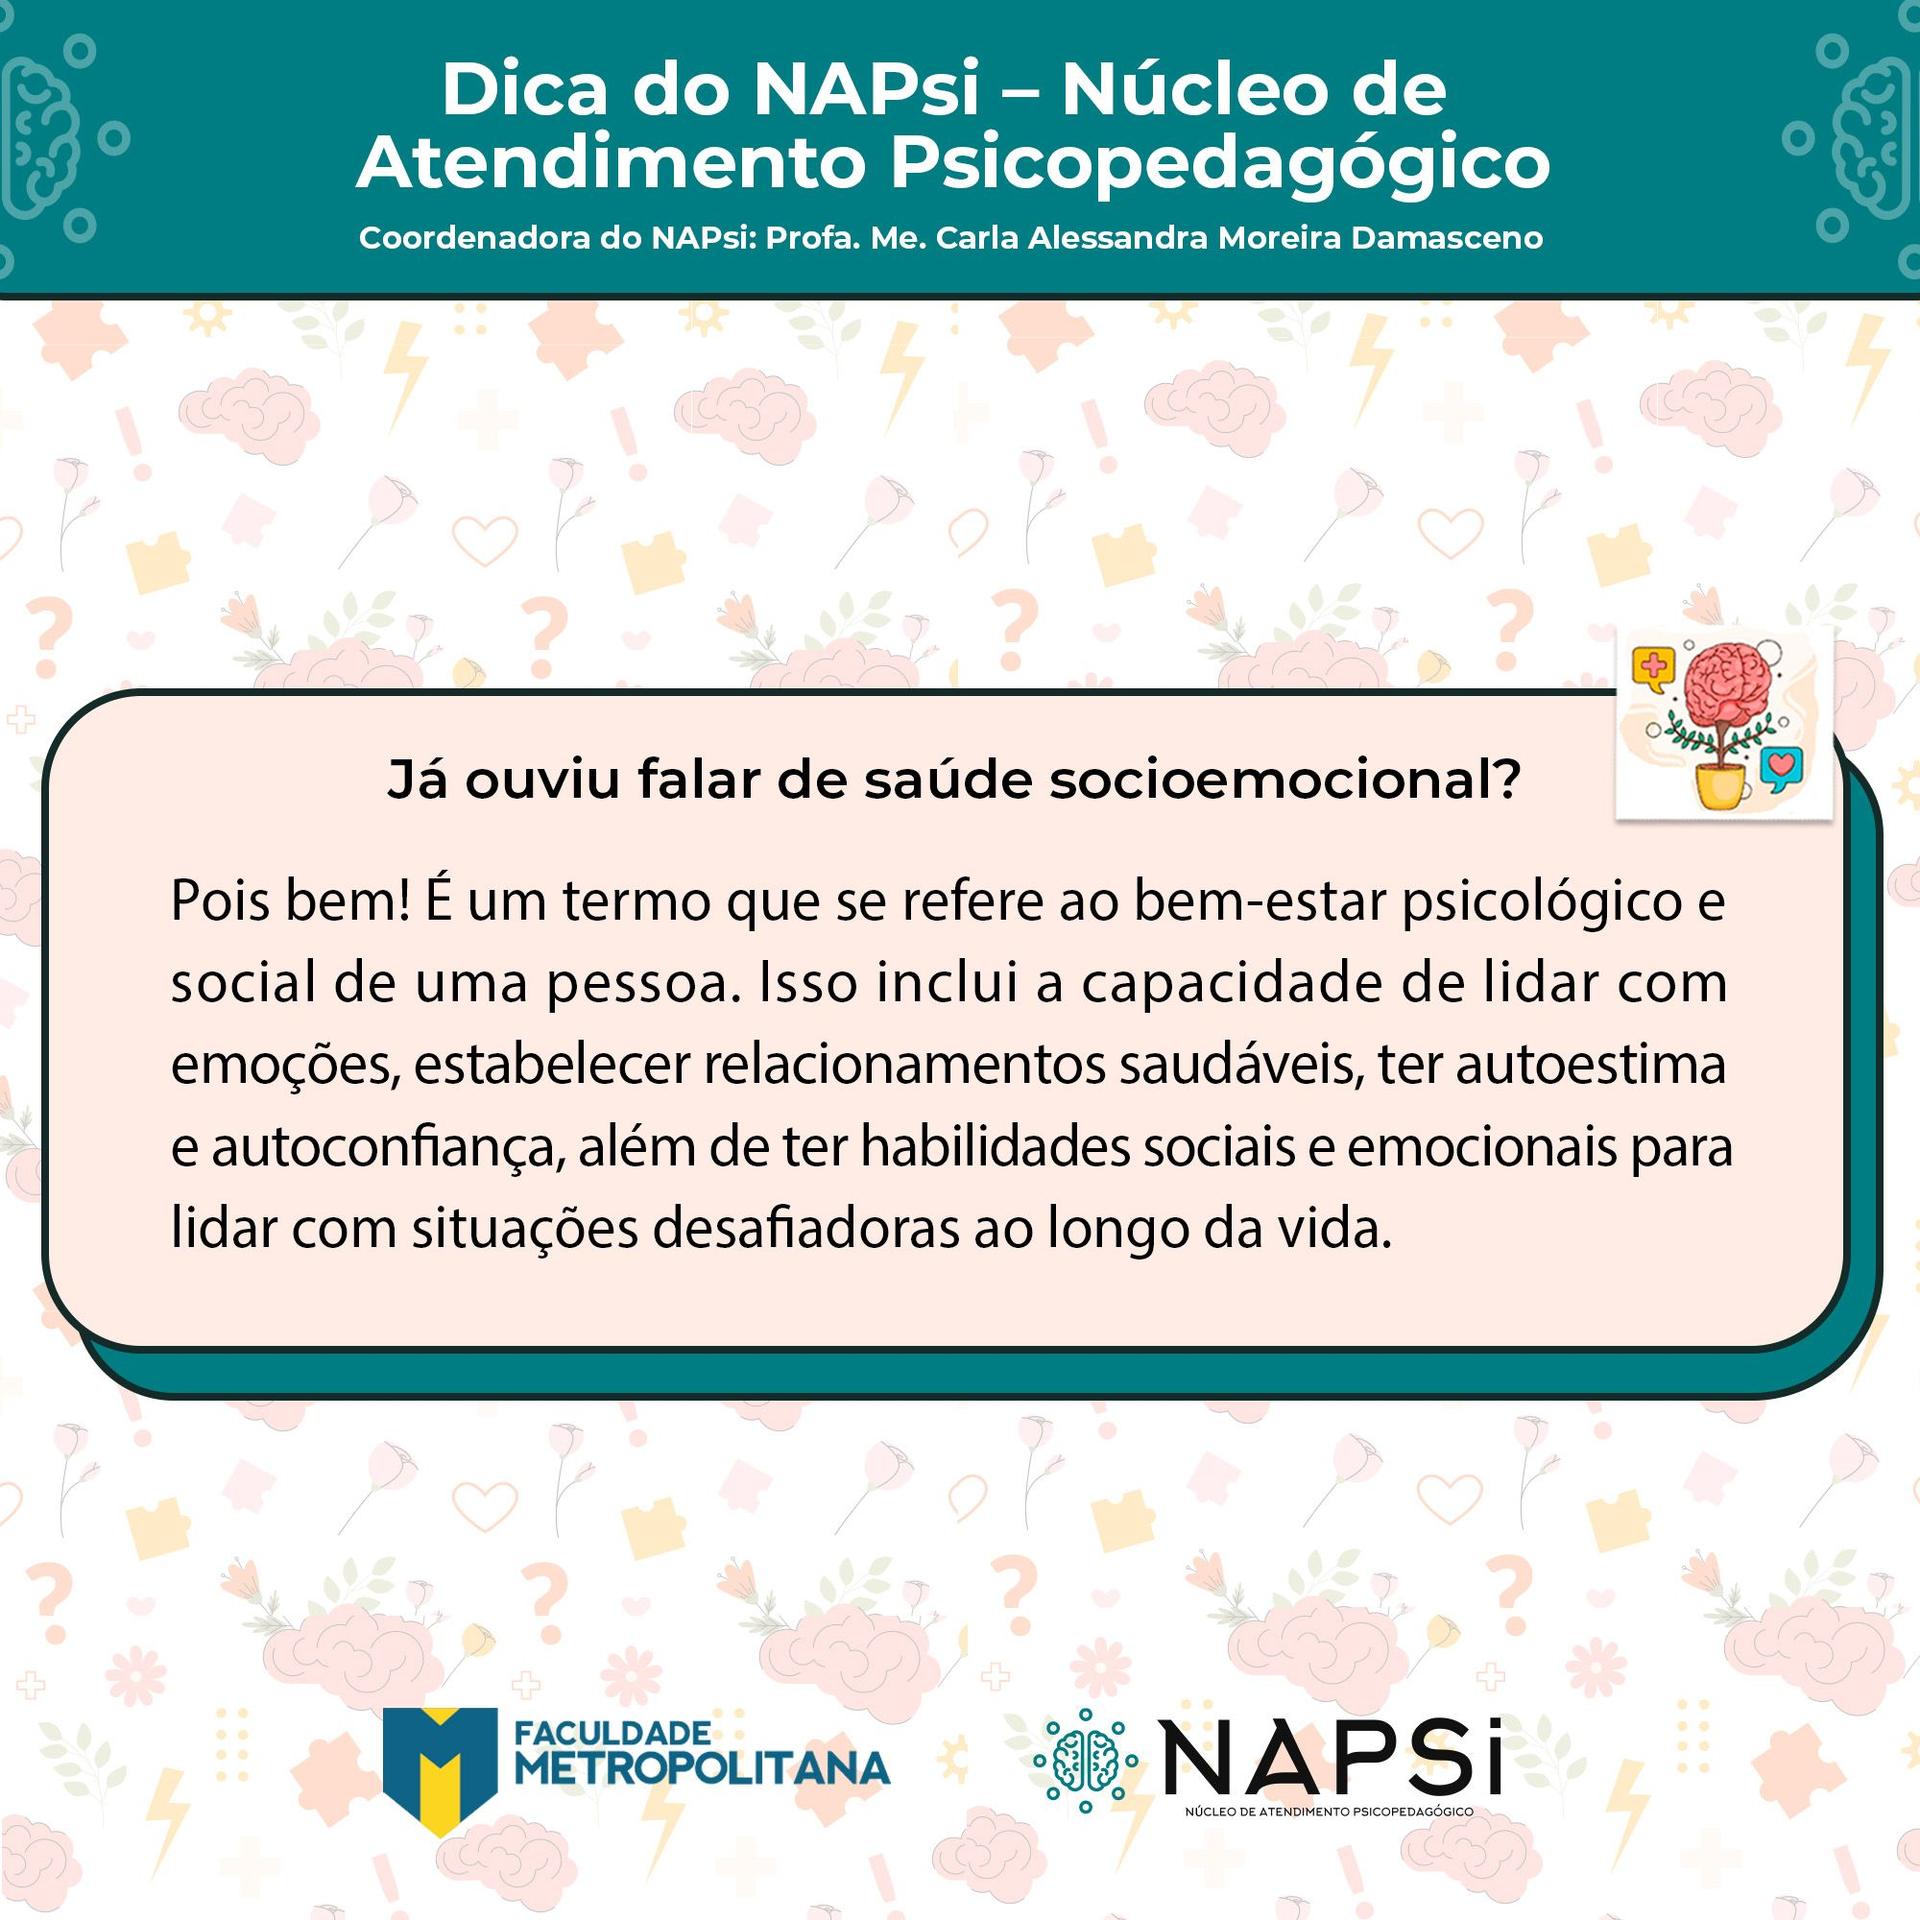 Vocês já conhecem o NAPsi?